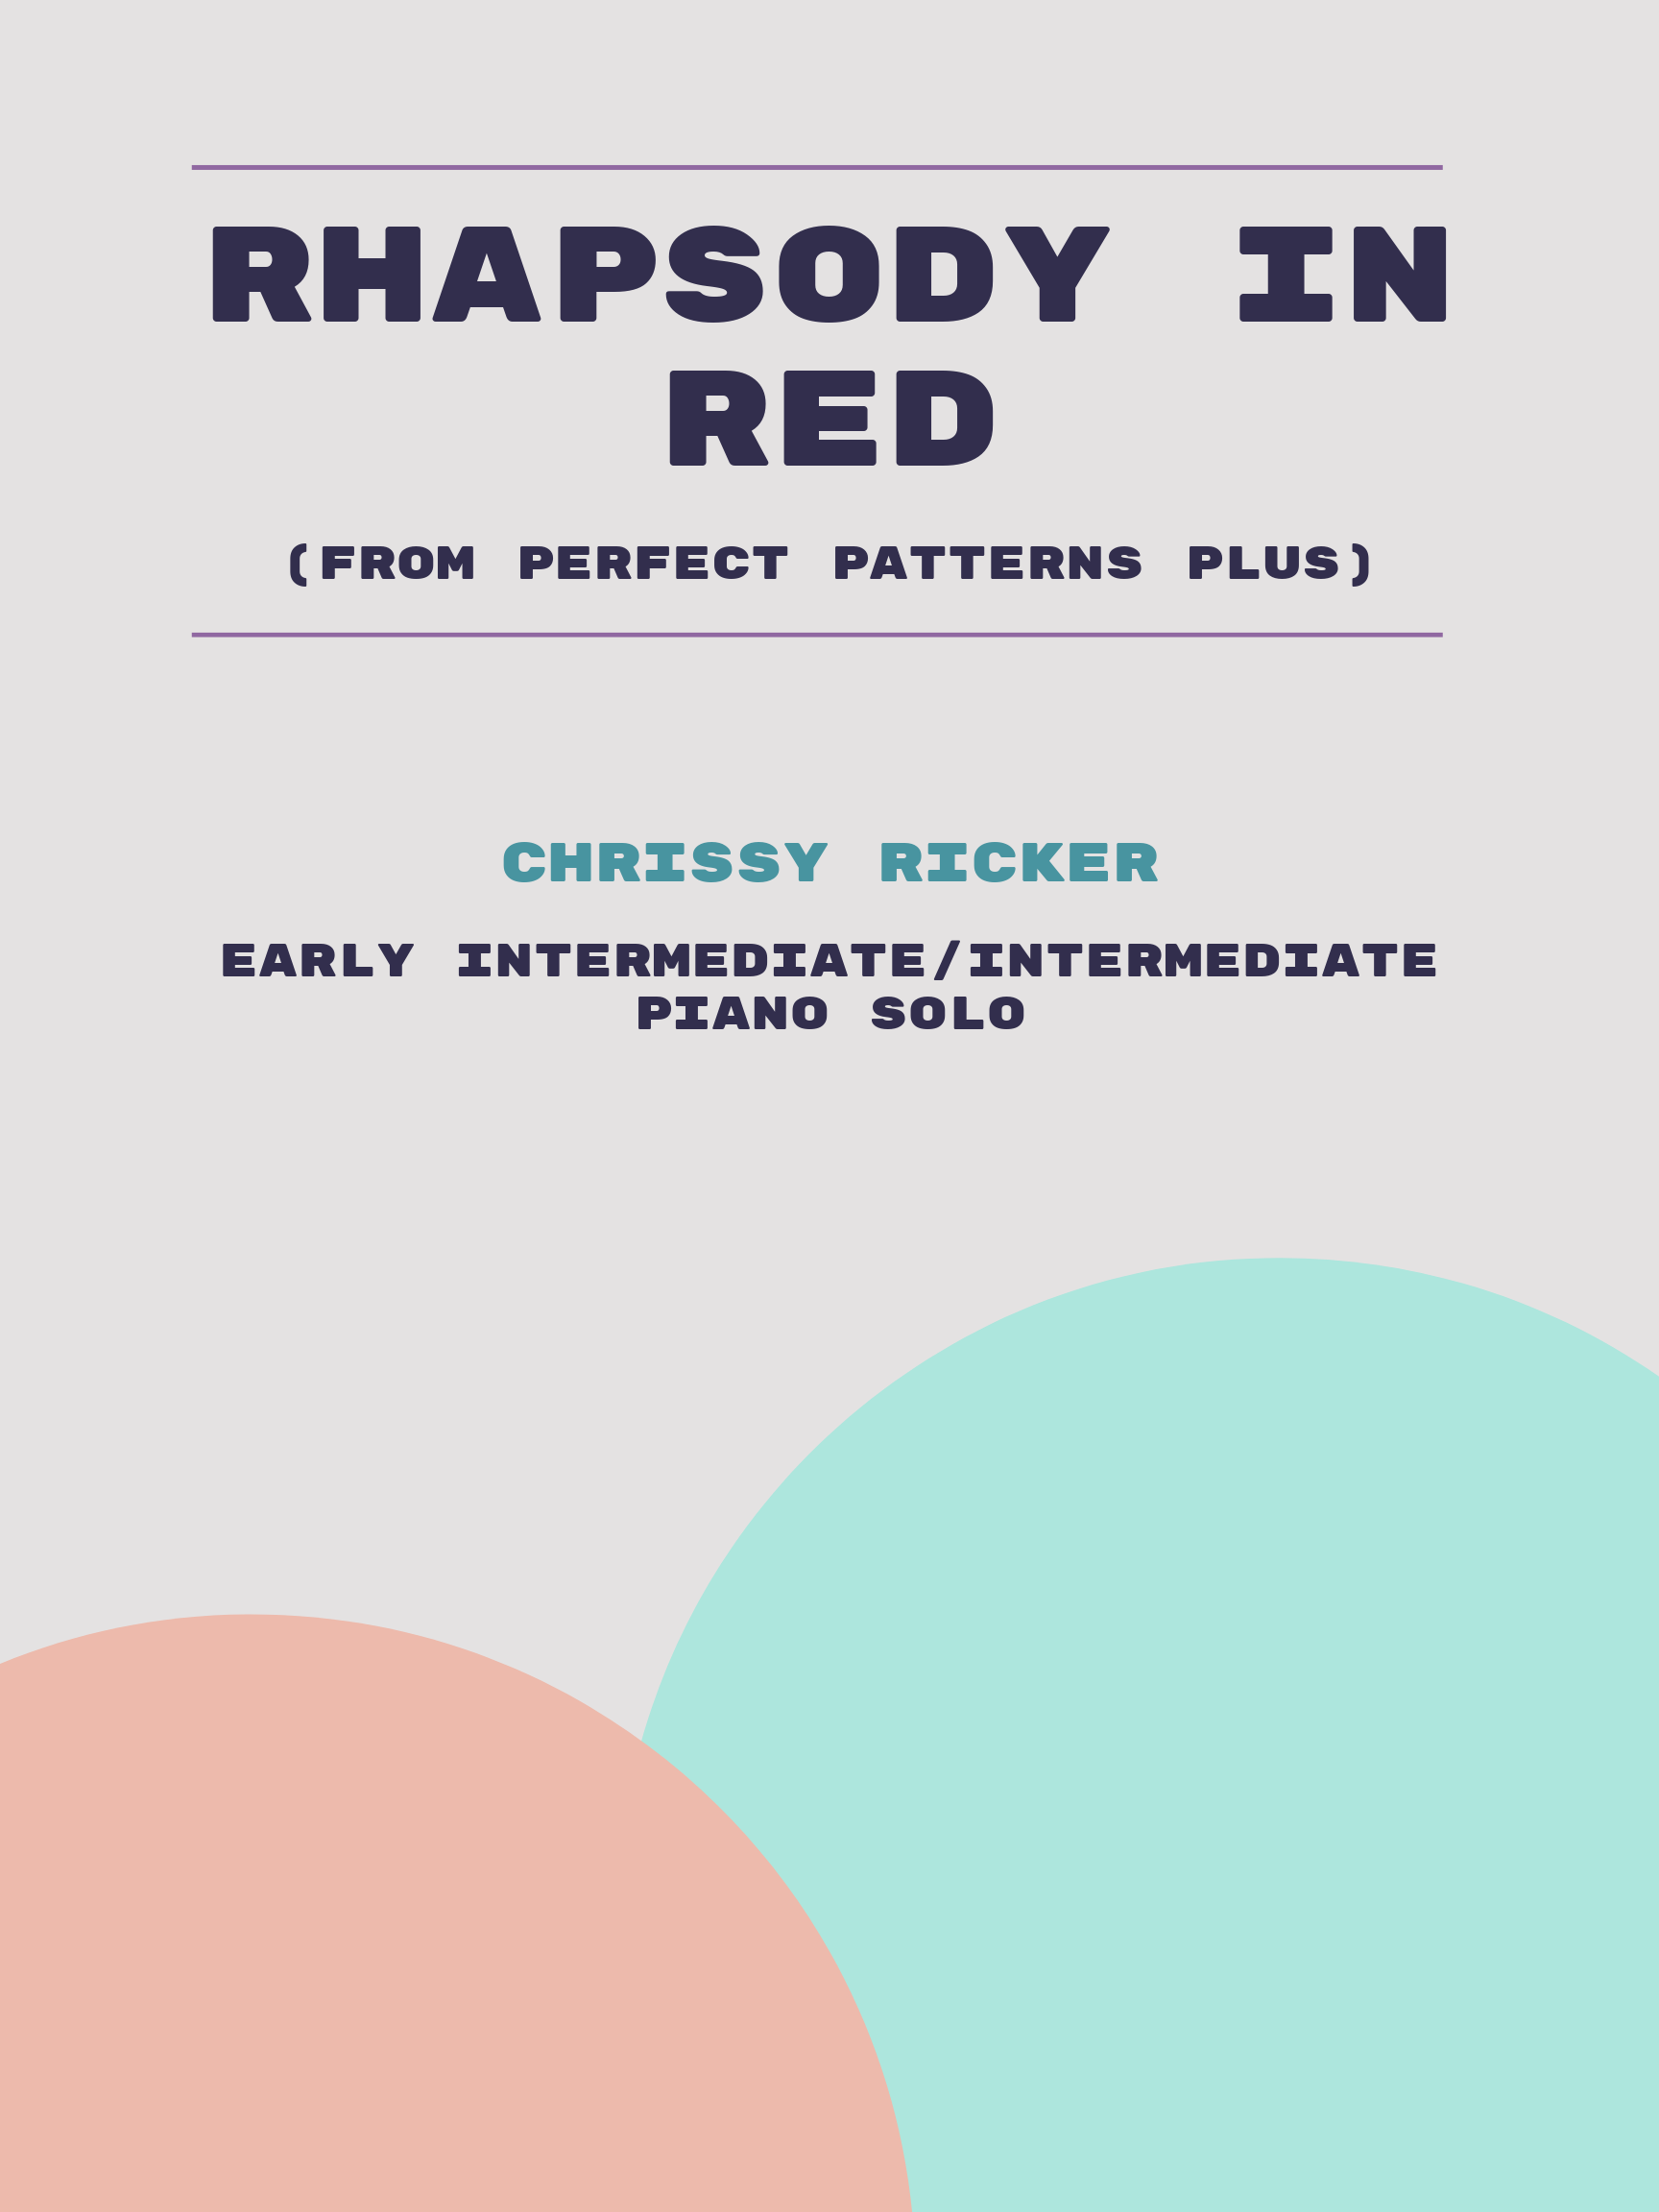 Rhapsody in Red by Chrissy Ricker